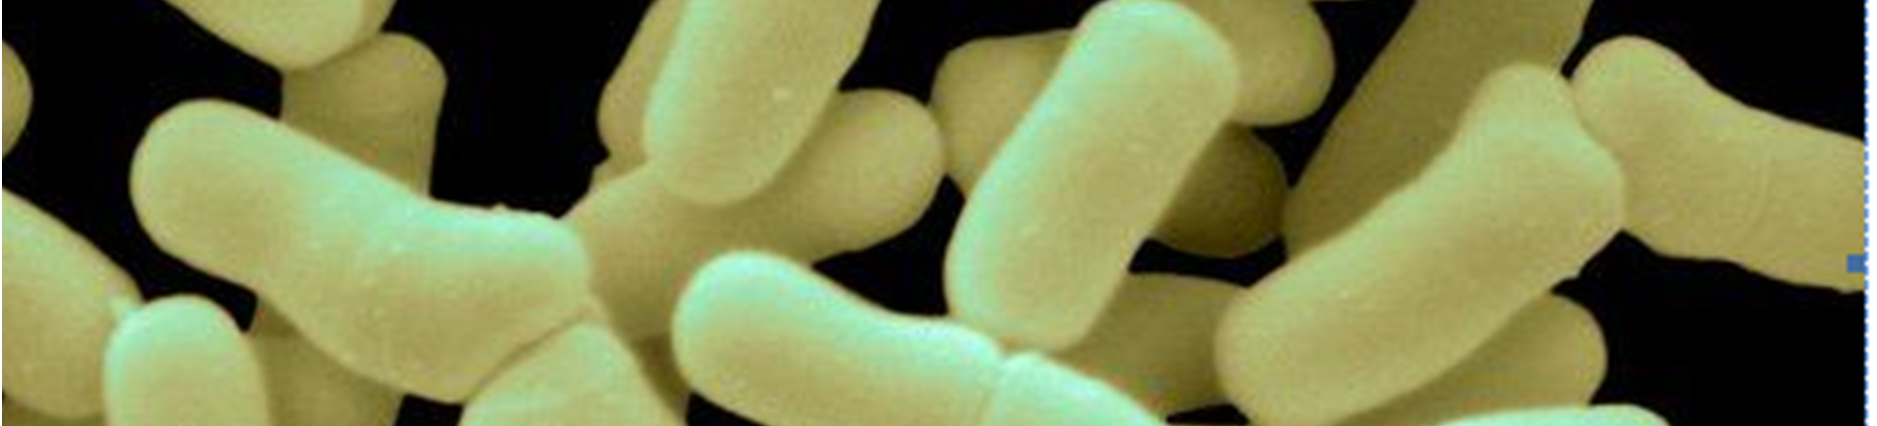 23 Bifidobacterium cinsi bakteriler asidofiliktir. Düşük ph da daha iyi ürerler. Fakat ısıya dayanıksızdır. 60 C de 5 dakikada ölürler.